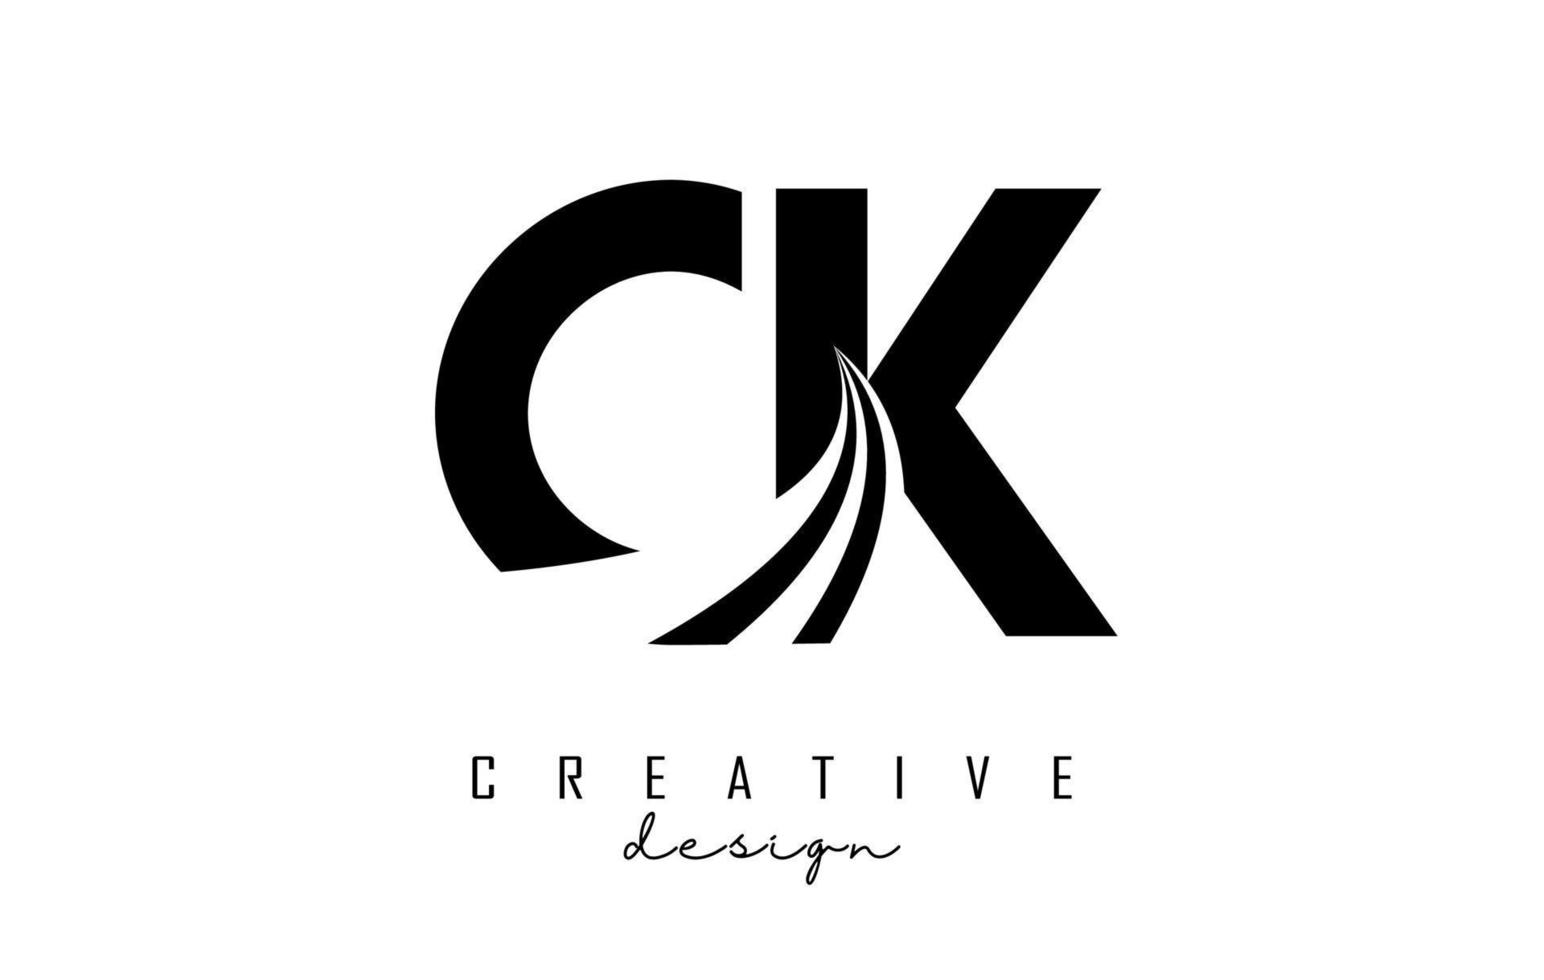 letras pretas criativas ck ck logotipo com linhas principais e design de conceito de estrada. letras com desenho geométrico. vetor